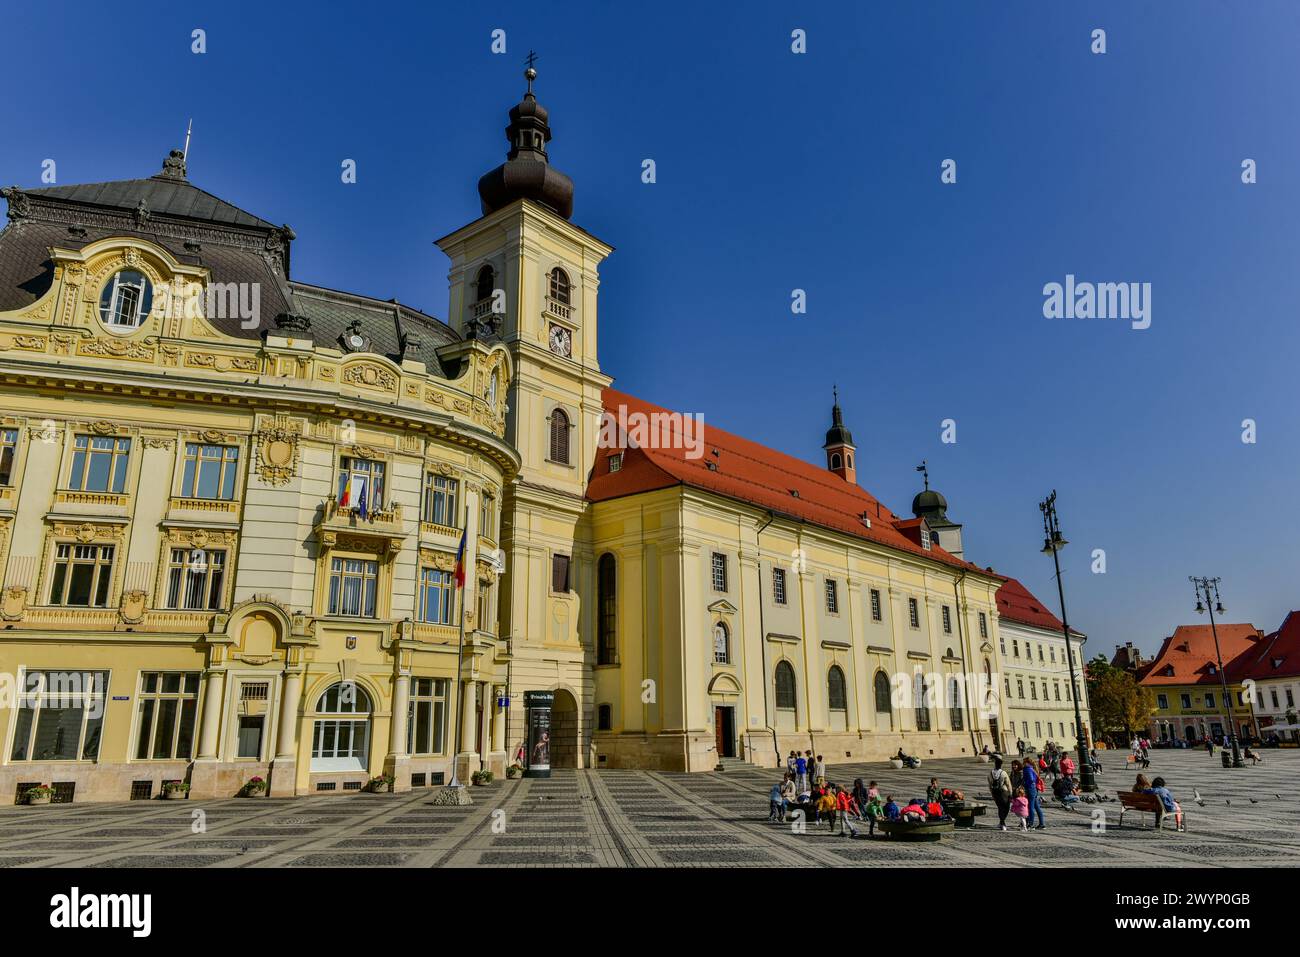 La mairie, l'église jésuite et plusieurs autres flèches et tours de la Grand Square (Piața Mare), Sibiu, Transylvanie, Roumanie Banque D'Images